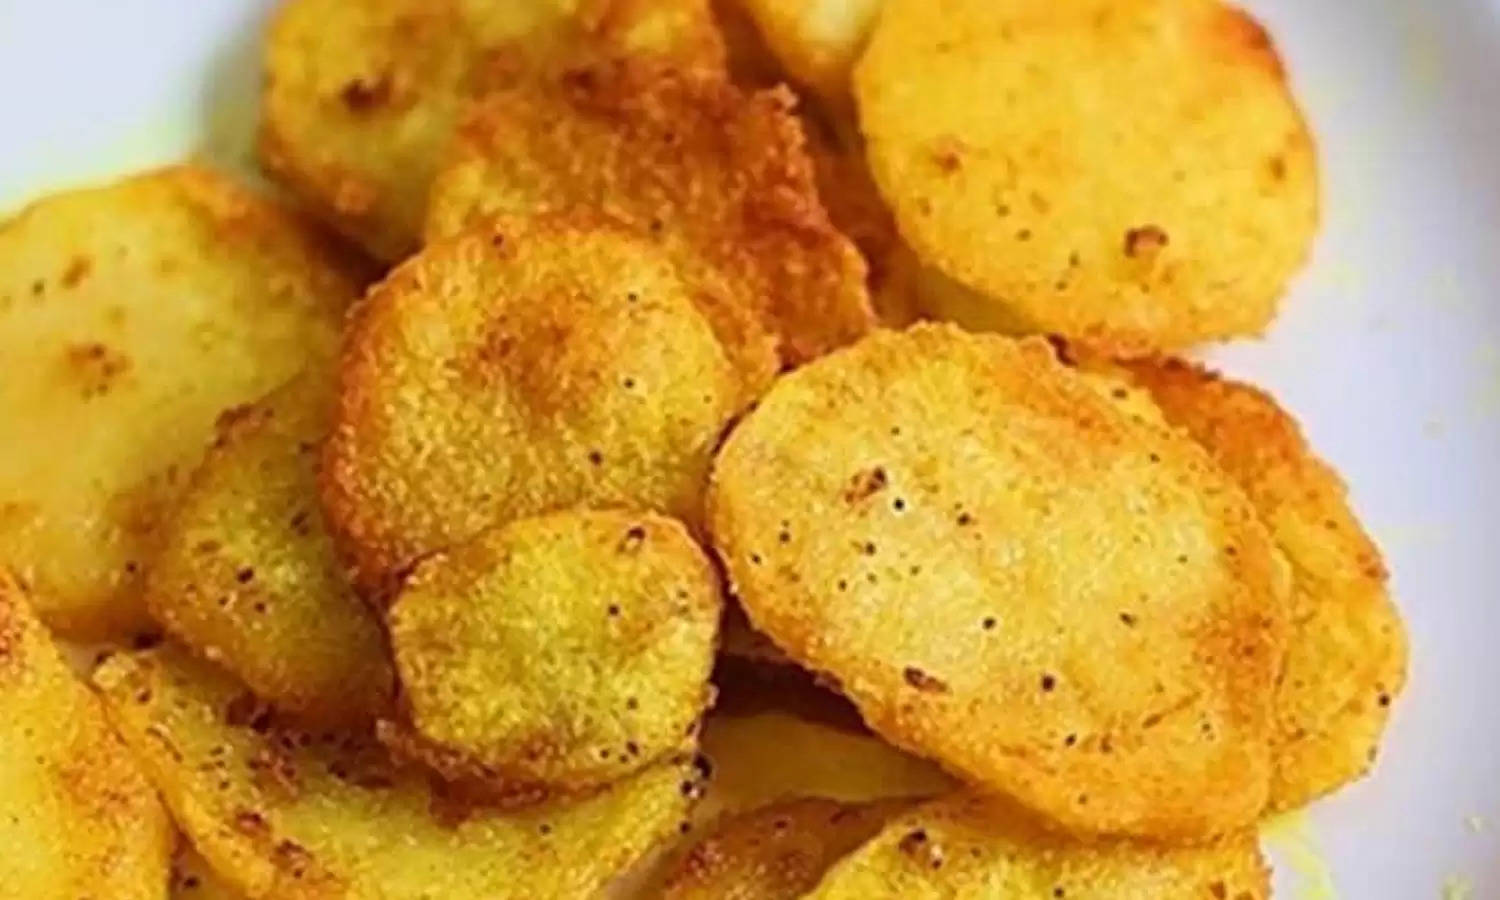 Fried Masala Potatoes : आलू के बने सभी डिश से ऊब गए हैं तो गर्मा गरम बनाएं ये खास डिश, मुंह में आएगा पानी